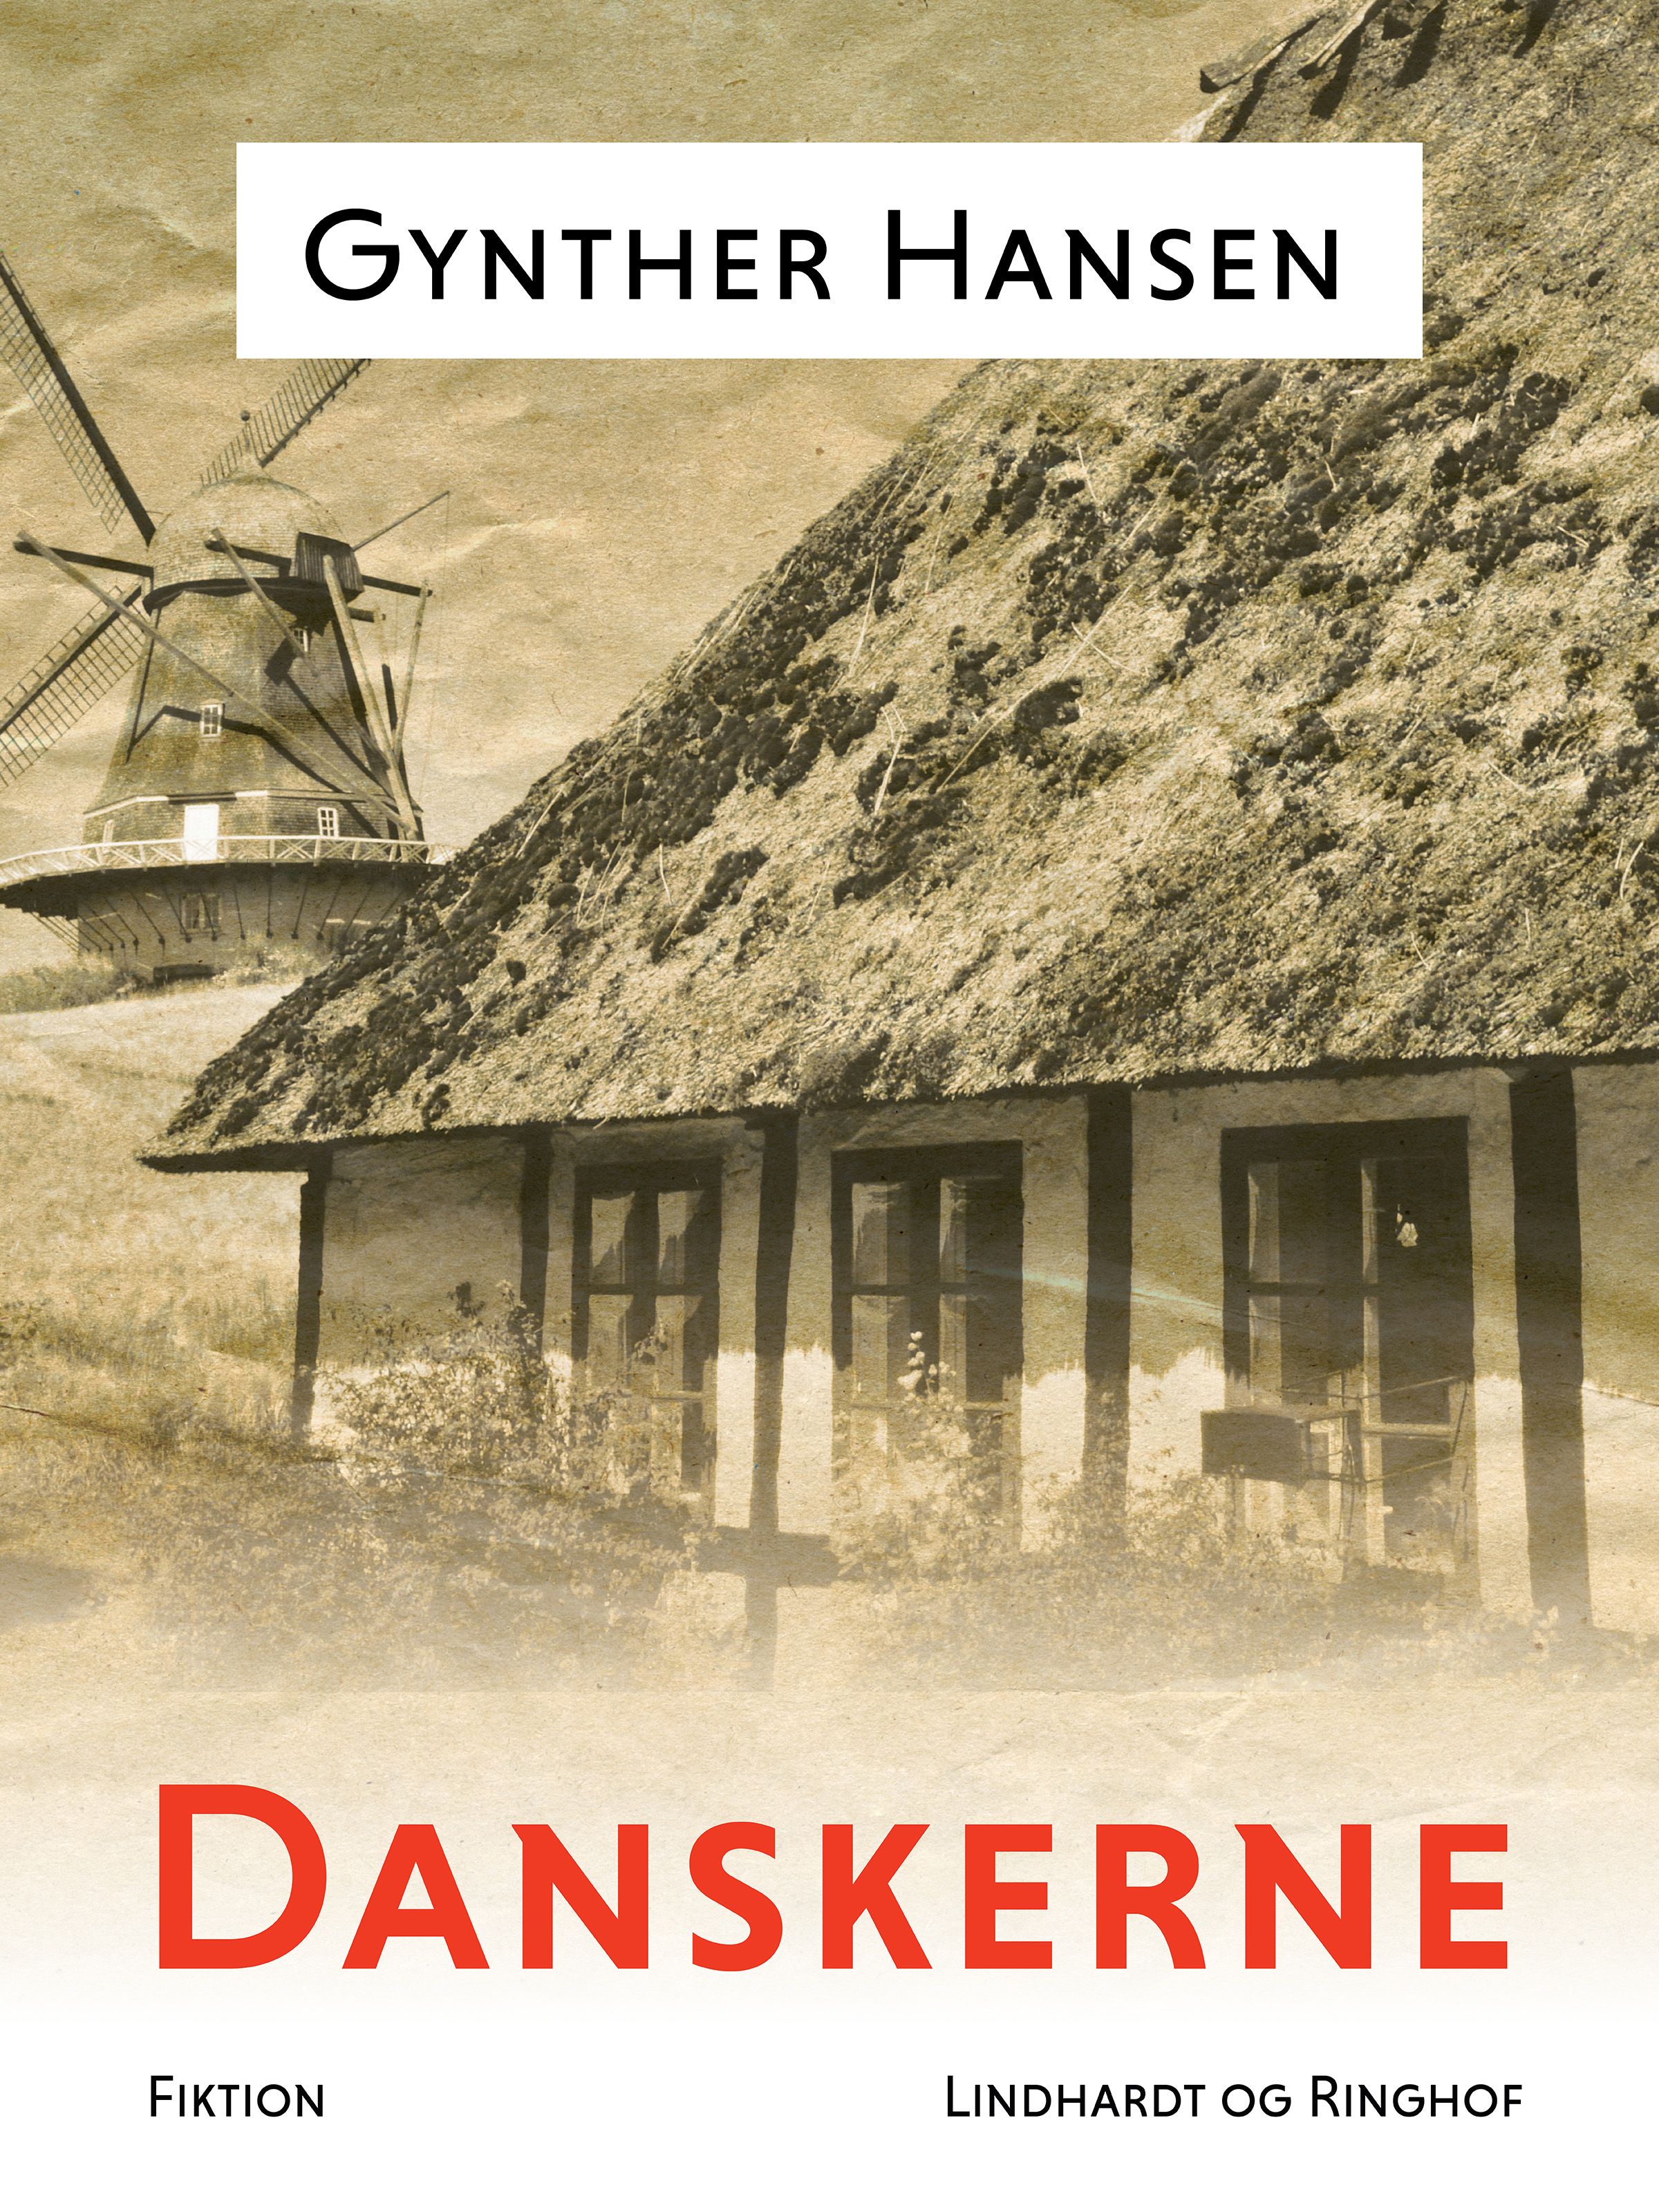 Danskerne, e-bok av Gynther Hansen